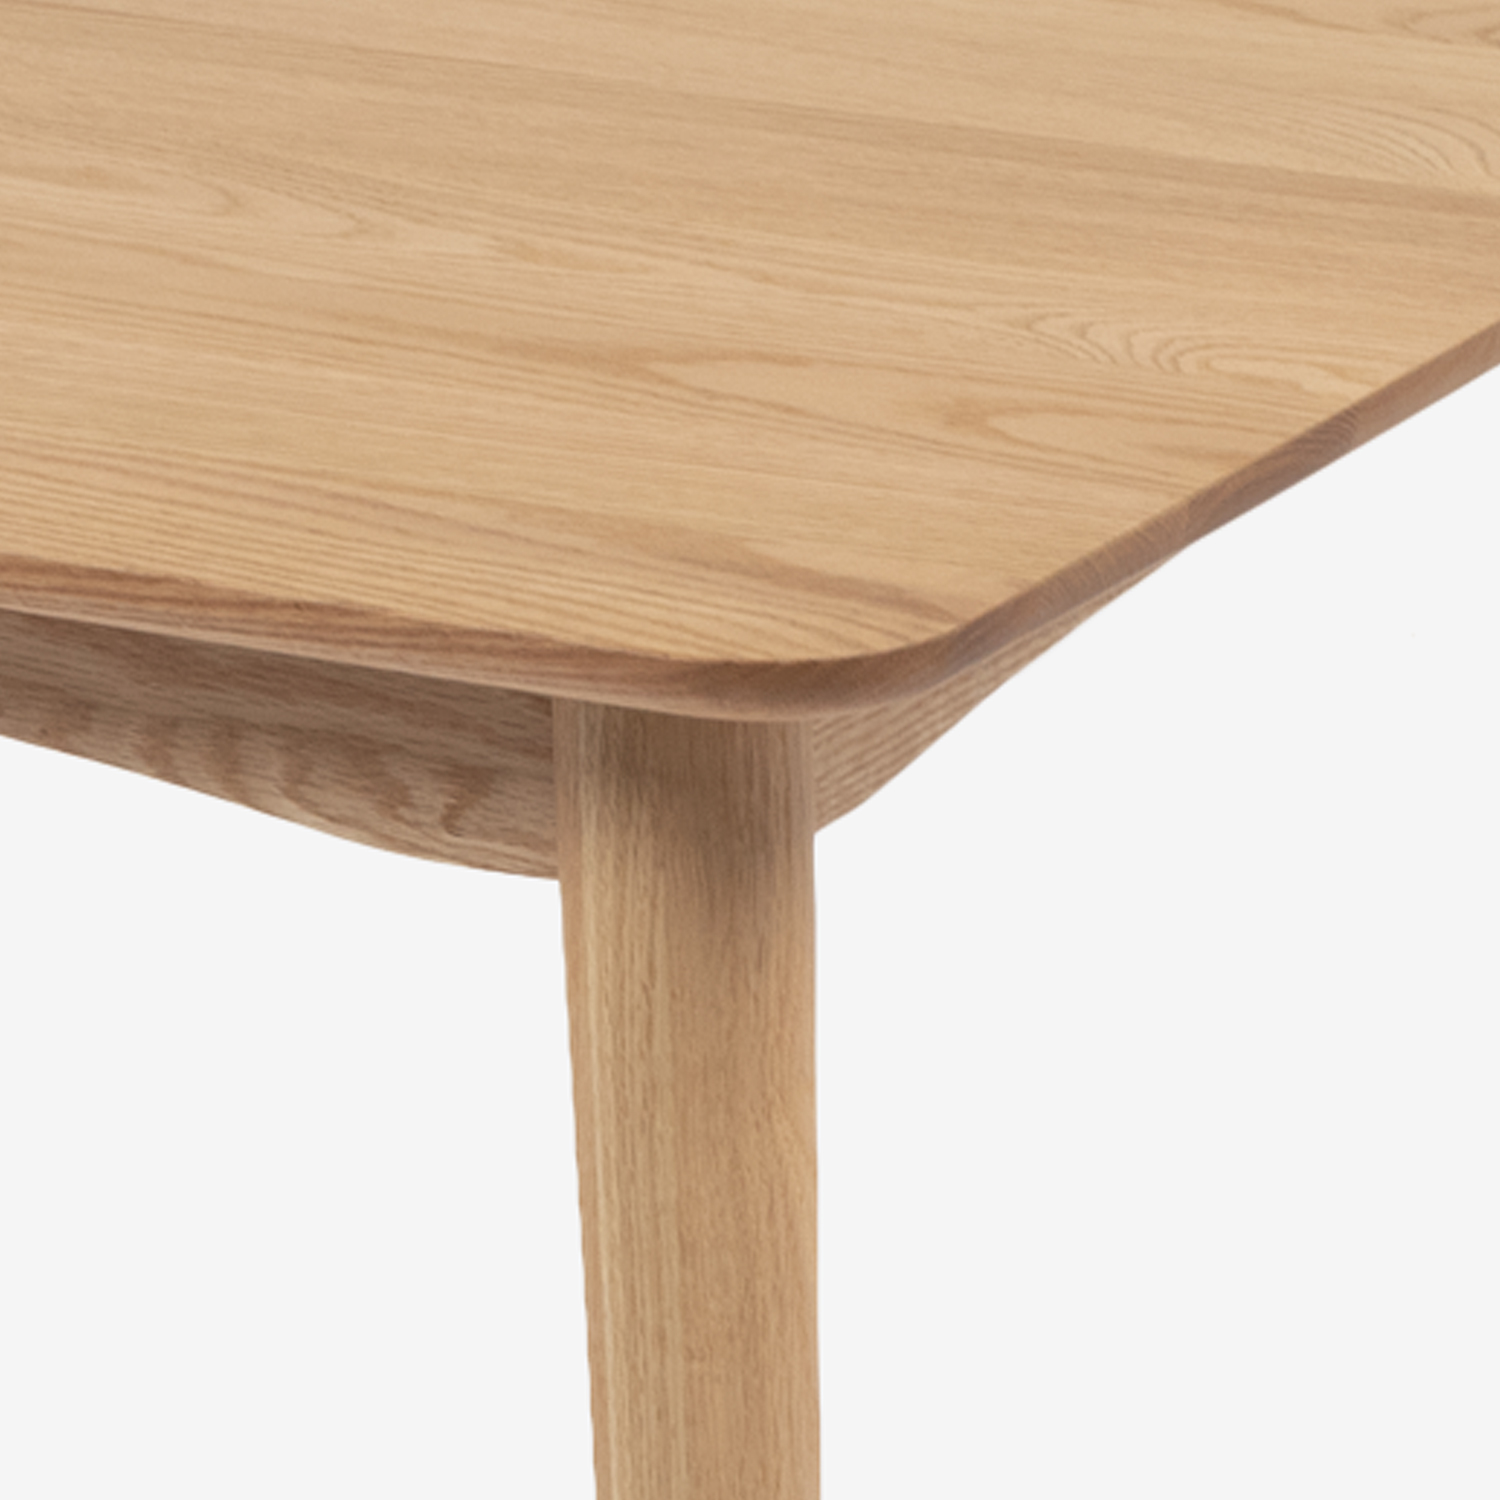 ダイニングテーブル｢シネマ3｣ 正方形 85cmX85cm レッドオーク材 ホワイトオーク色